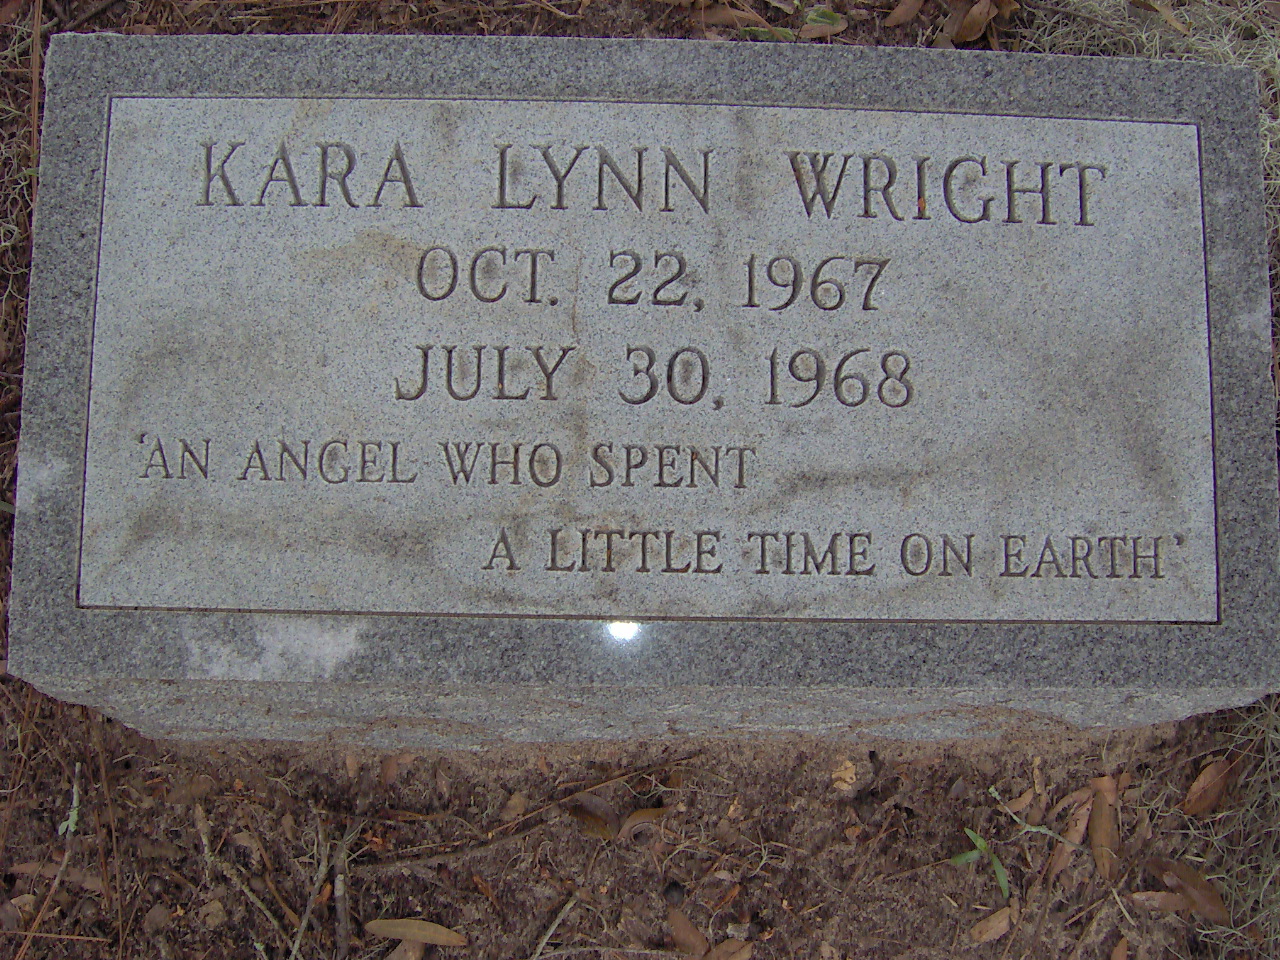 Headstone for Wright, Kara Lynn